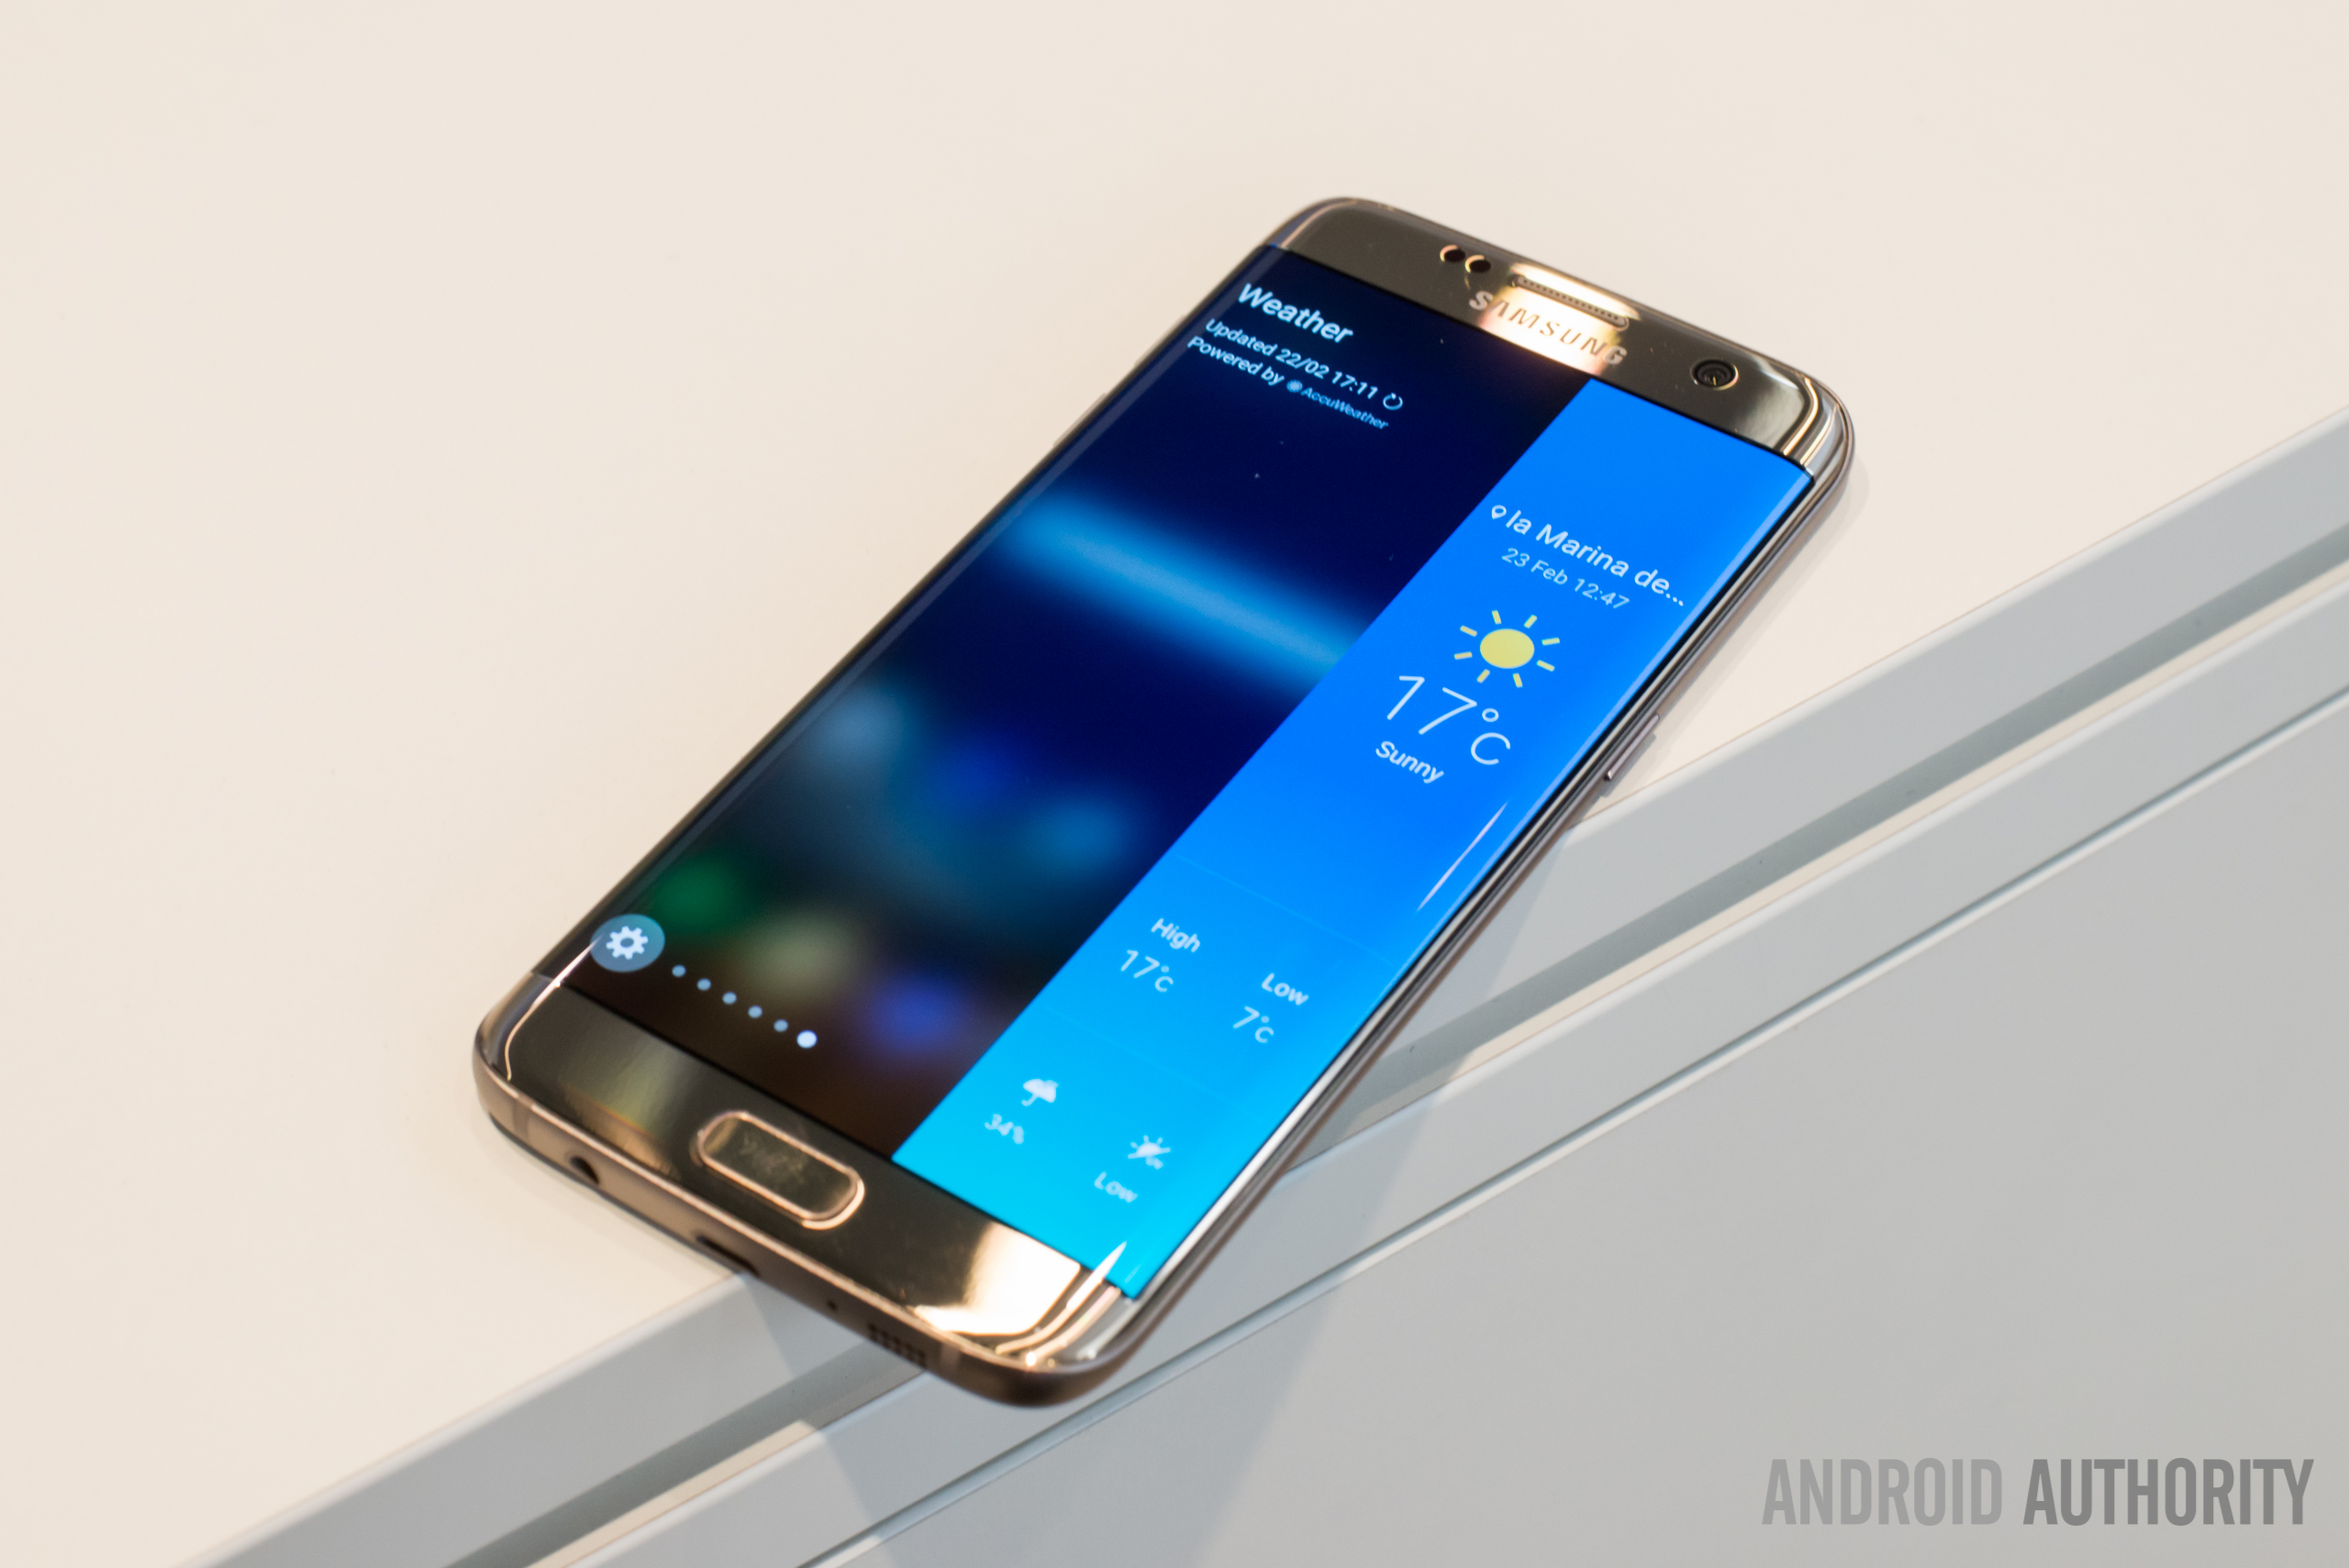 Samsung Galaxy S7 64gb